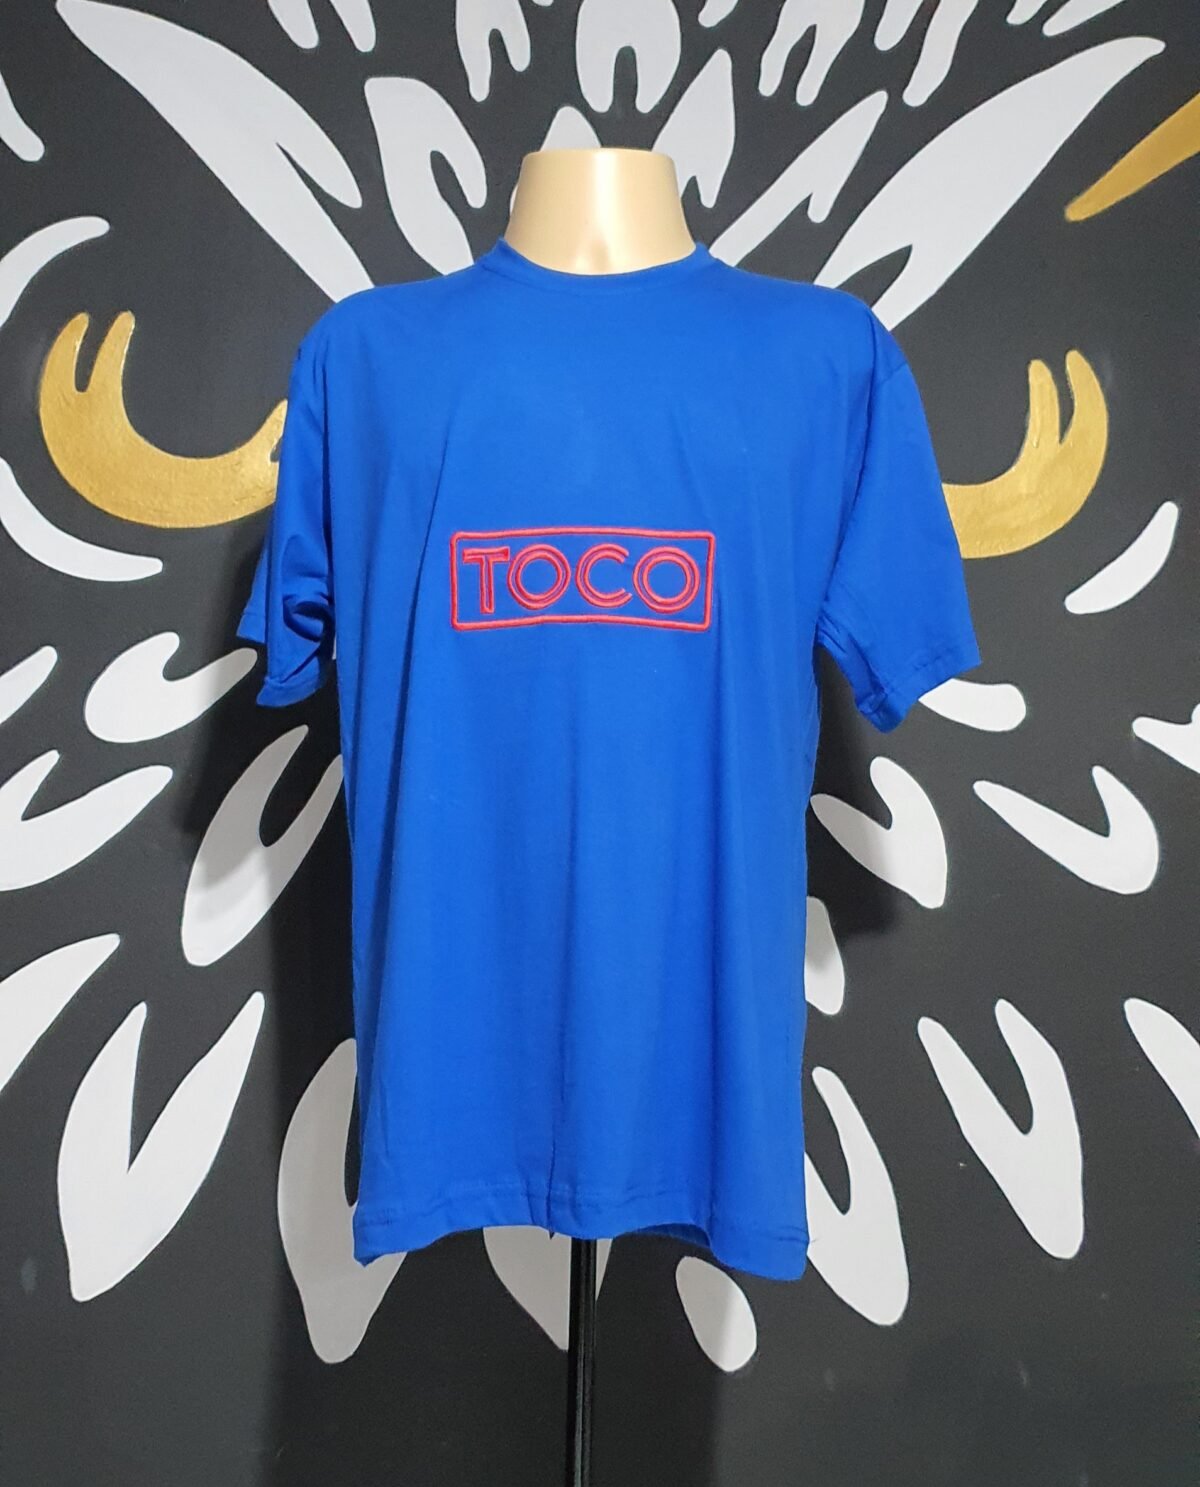 Camiseta Bordado da Danceteria TOCO by Bordado & Cia - @bordado.cia; @dj.vadao; @tocodance; #danceteriatoco